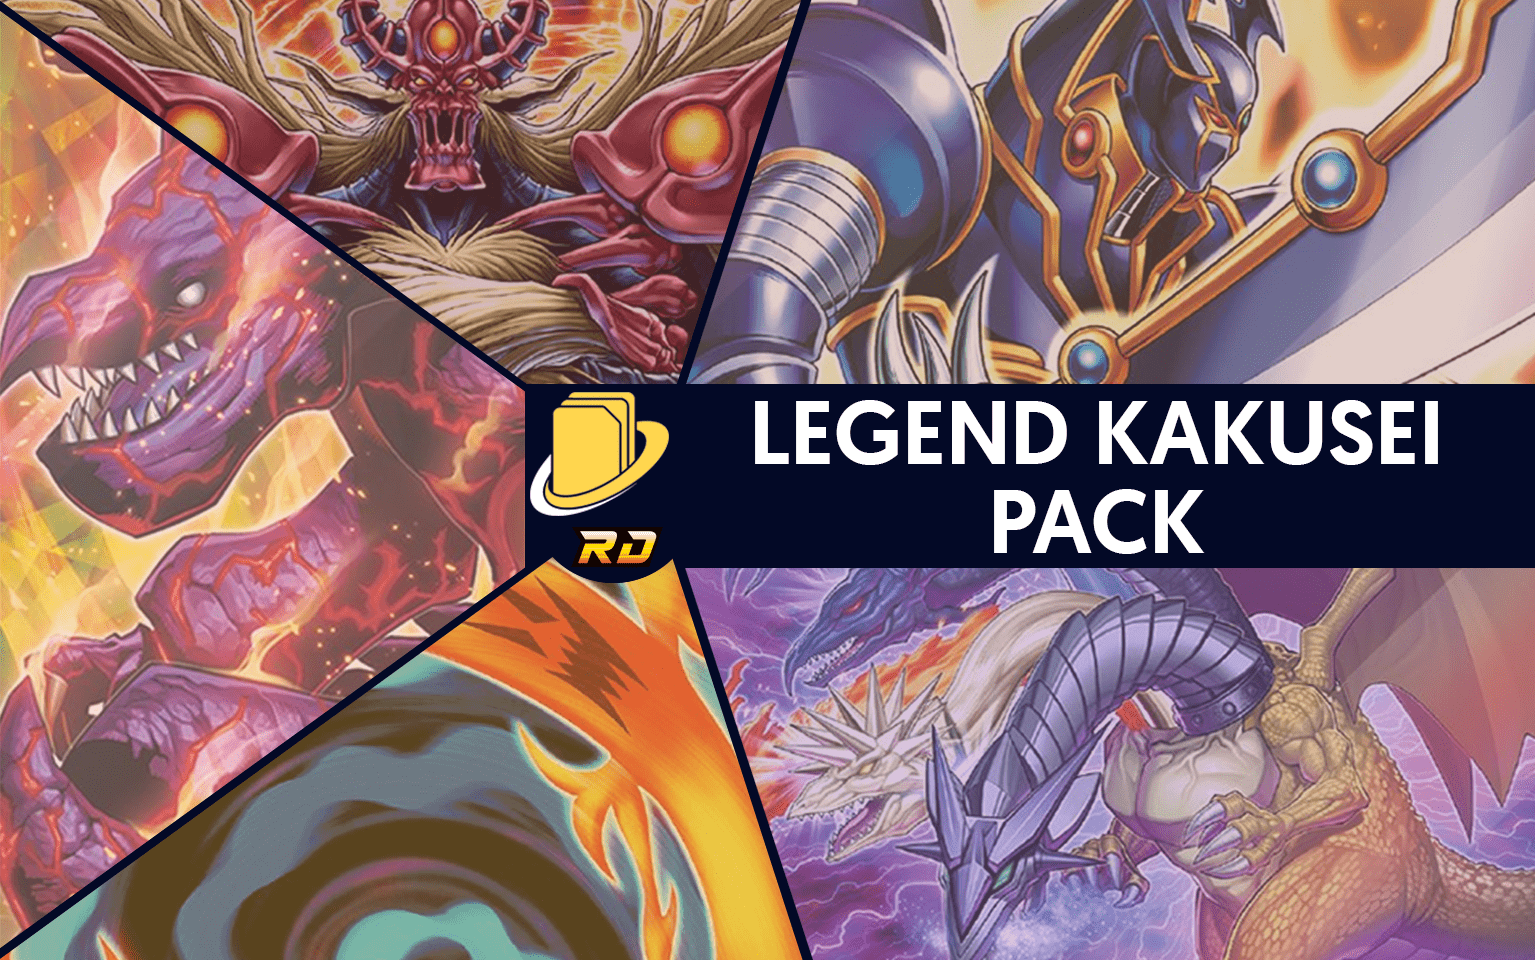 Les cartes du Legend Kakusei Pack